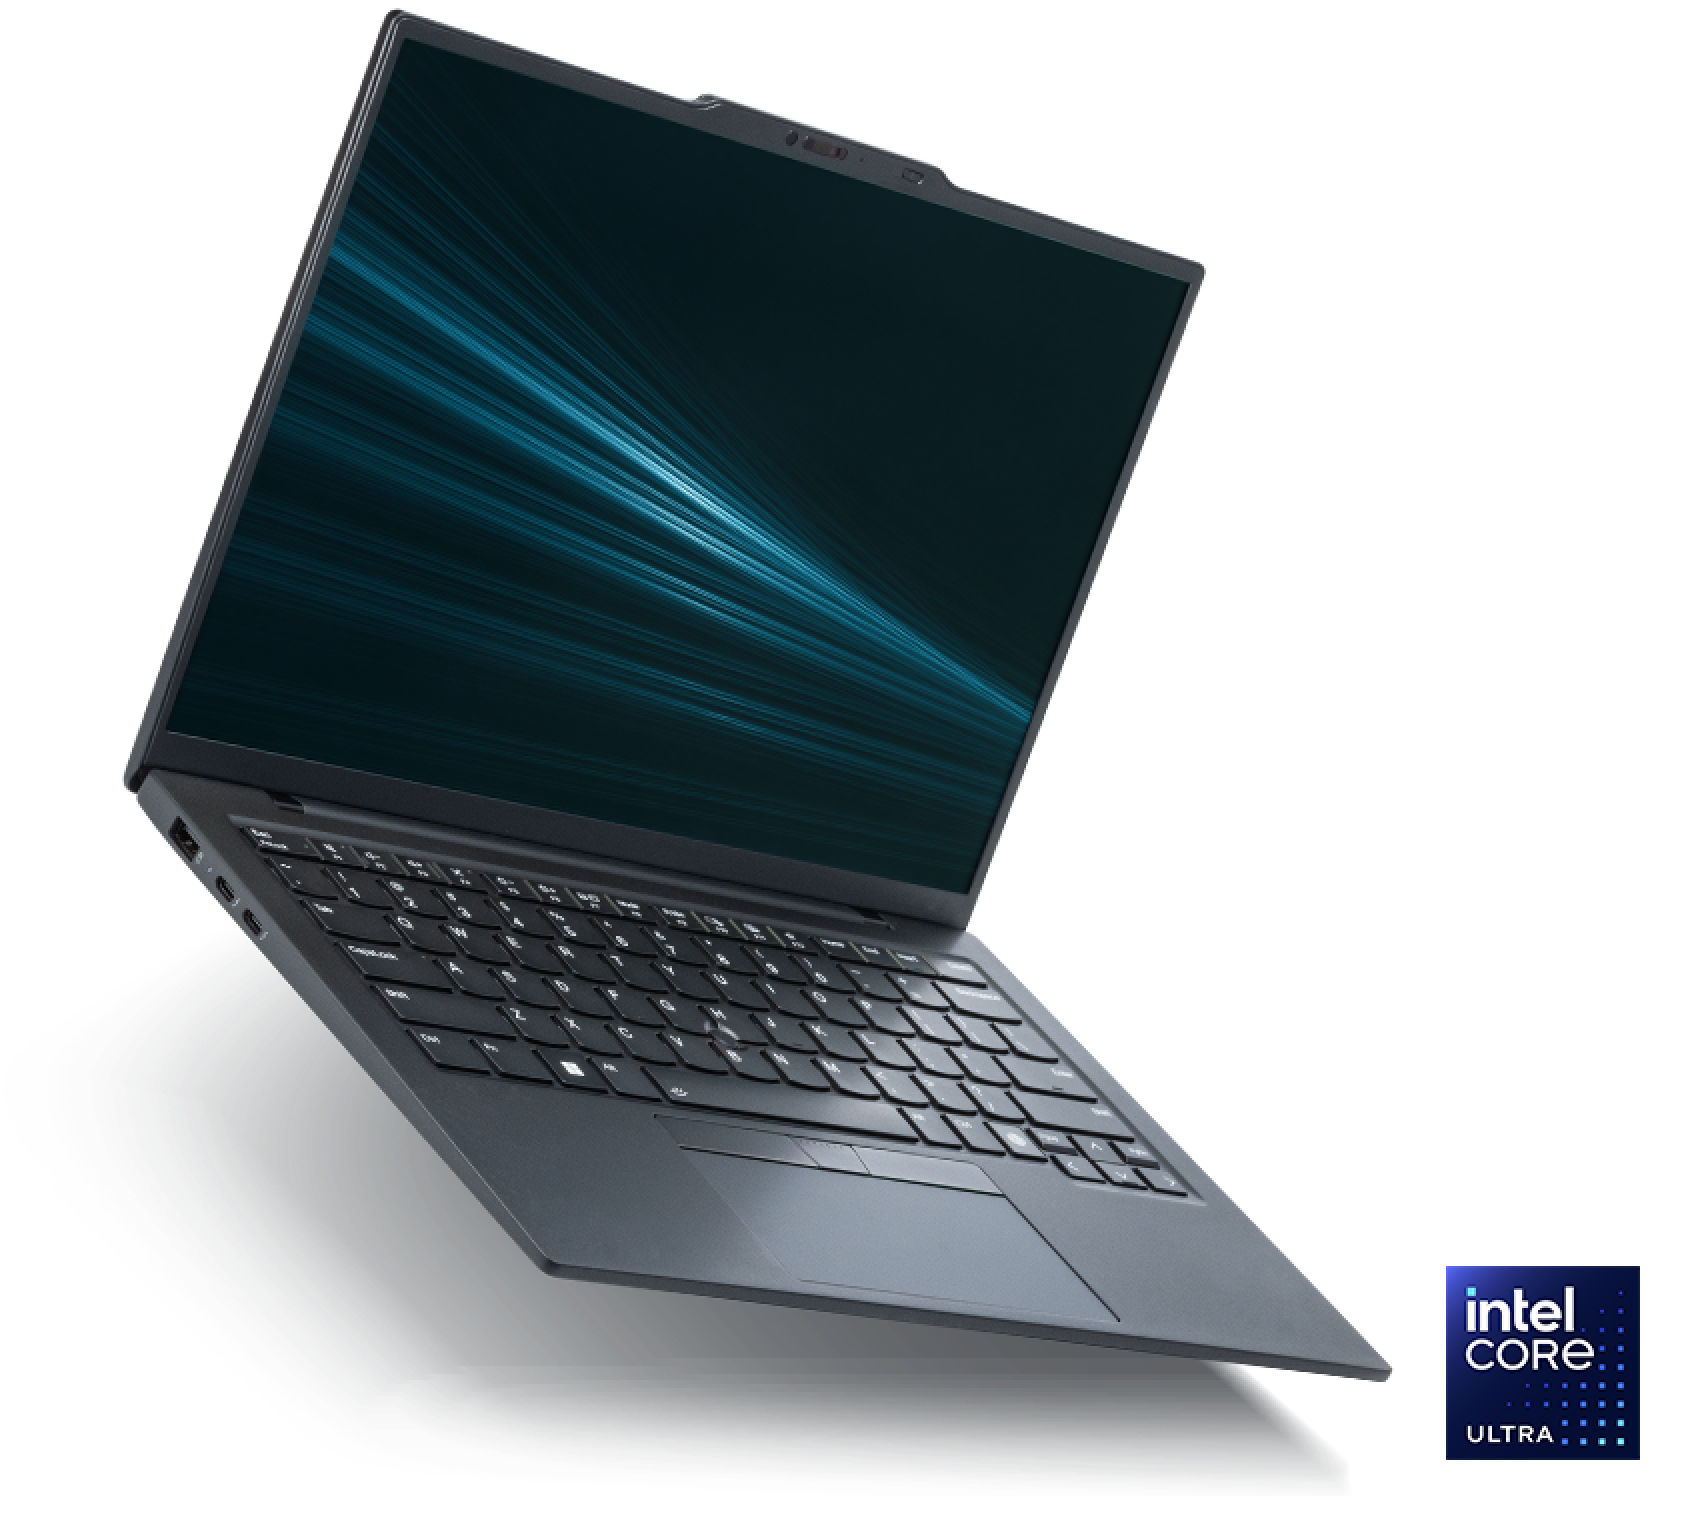 搭载英特尔酷睿 Ultra 处理器的英特尔 Evo 版笔记本电脑。